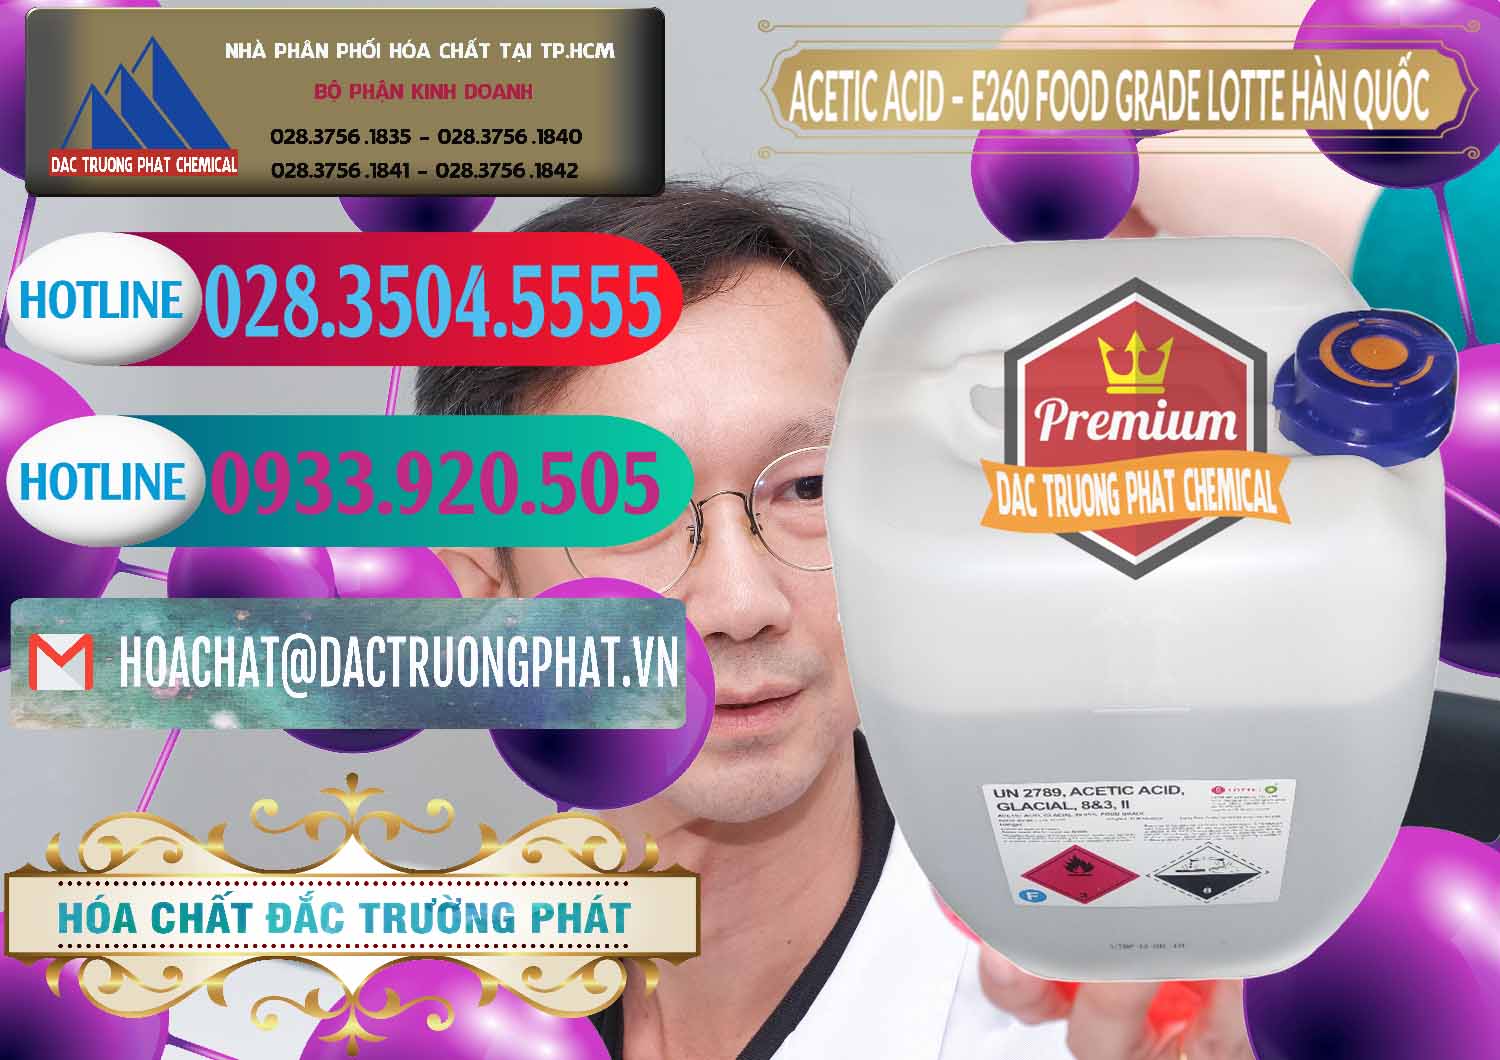 Cty chuyên phân phối & bán Acetic Acid – Axit Acetic E260 Food Grade Hàn Quốc Lotte Korea - 0003 - Cty bán ( phân phối ) hóa chất tại TP.HCM - truongphat.vn